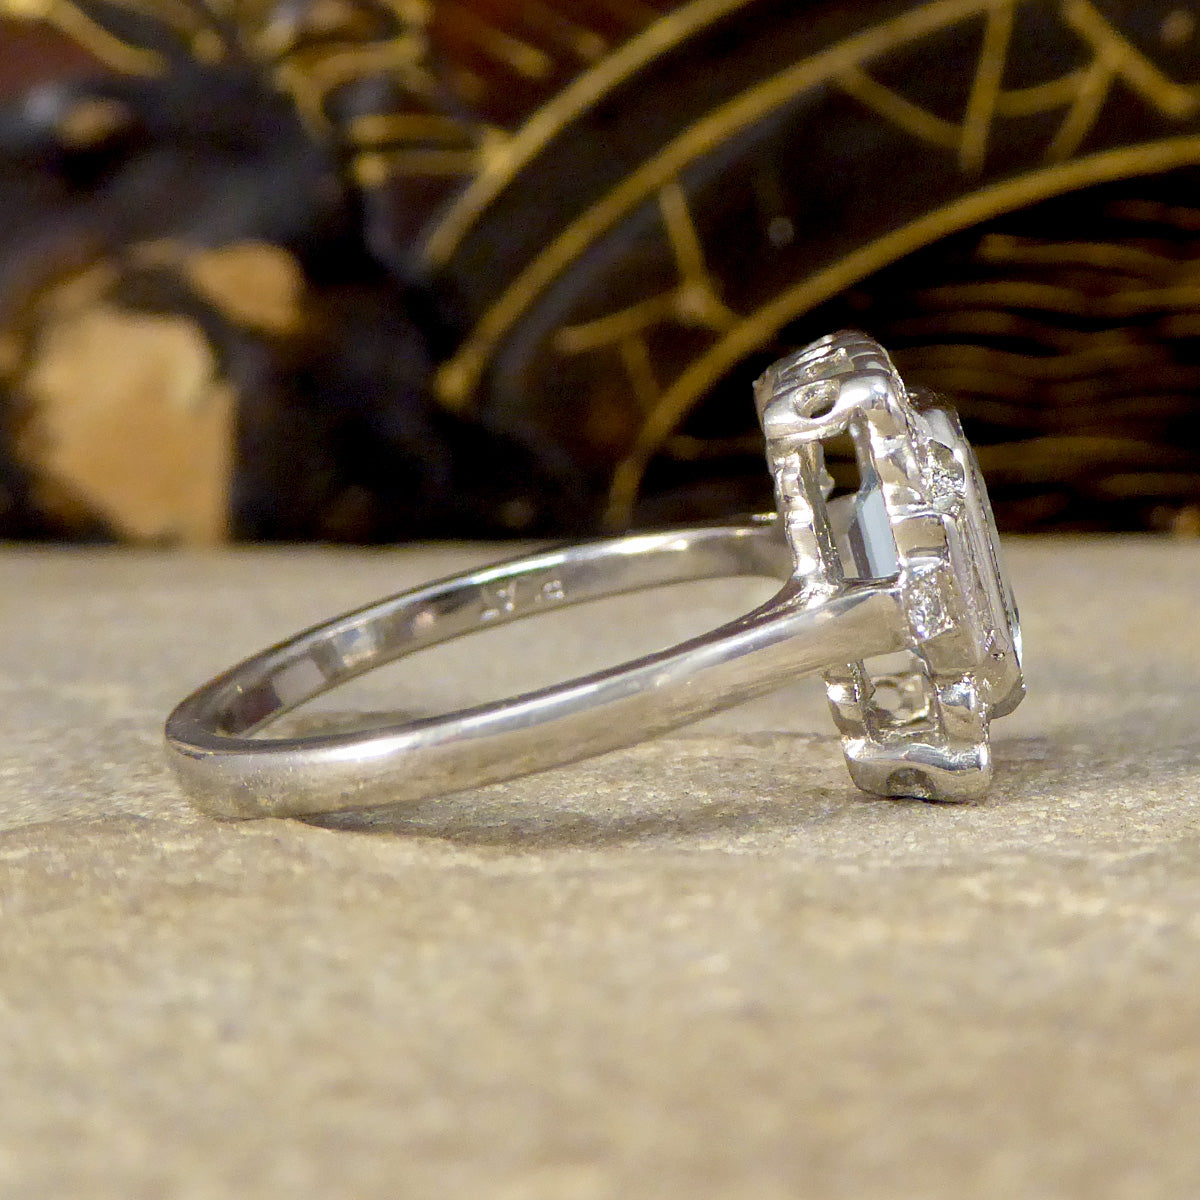 Art Deco Inspired Aquamarine and Diamond Cluster Ring in Platinum